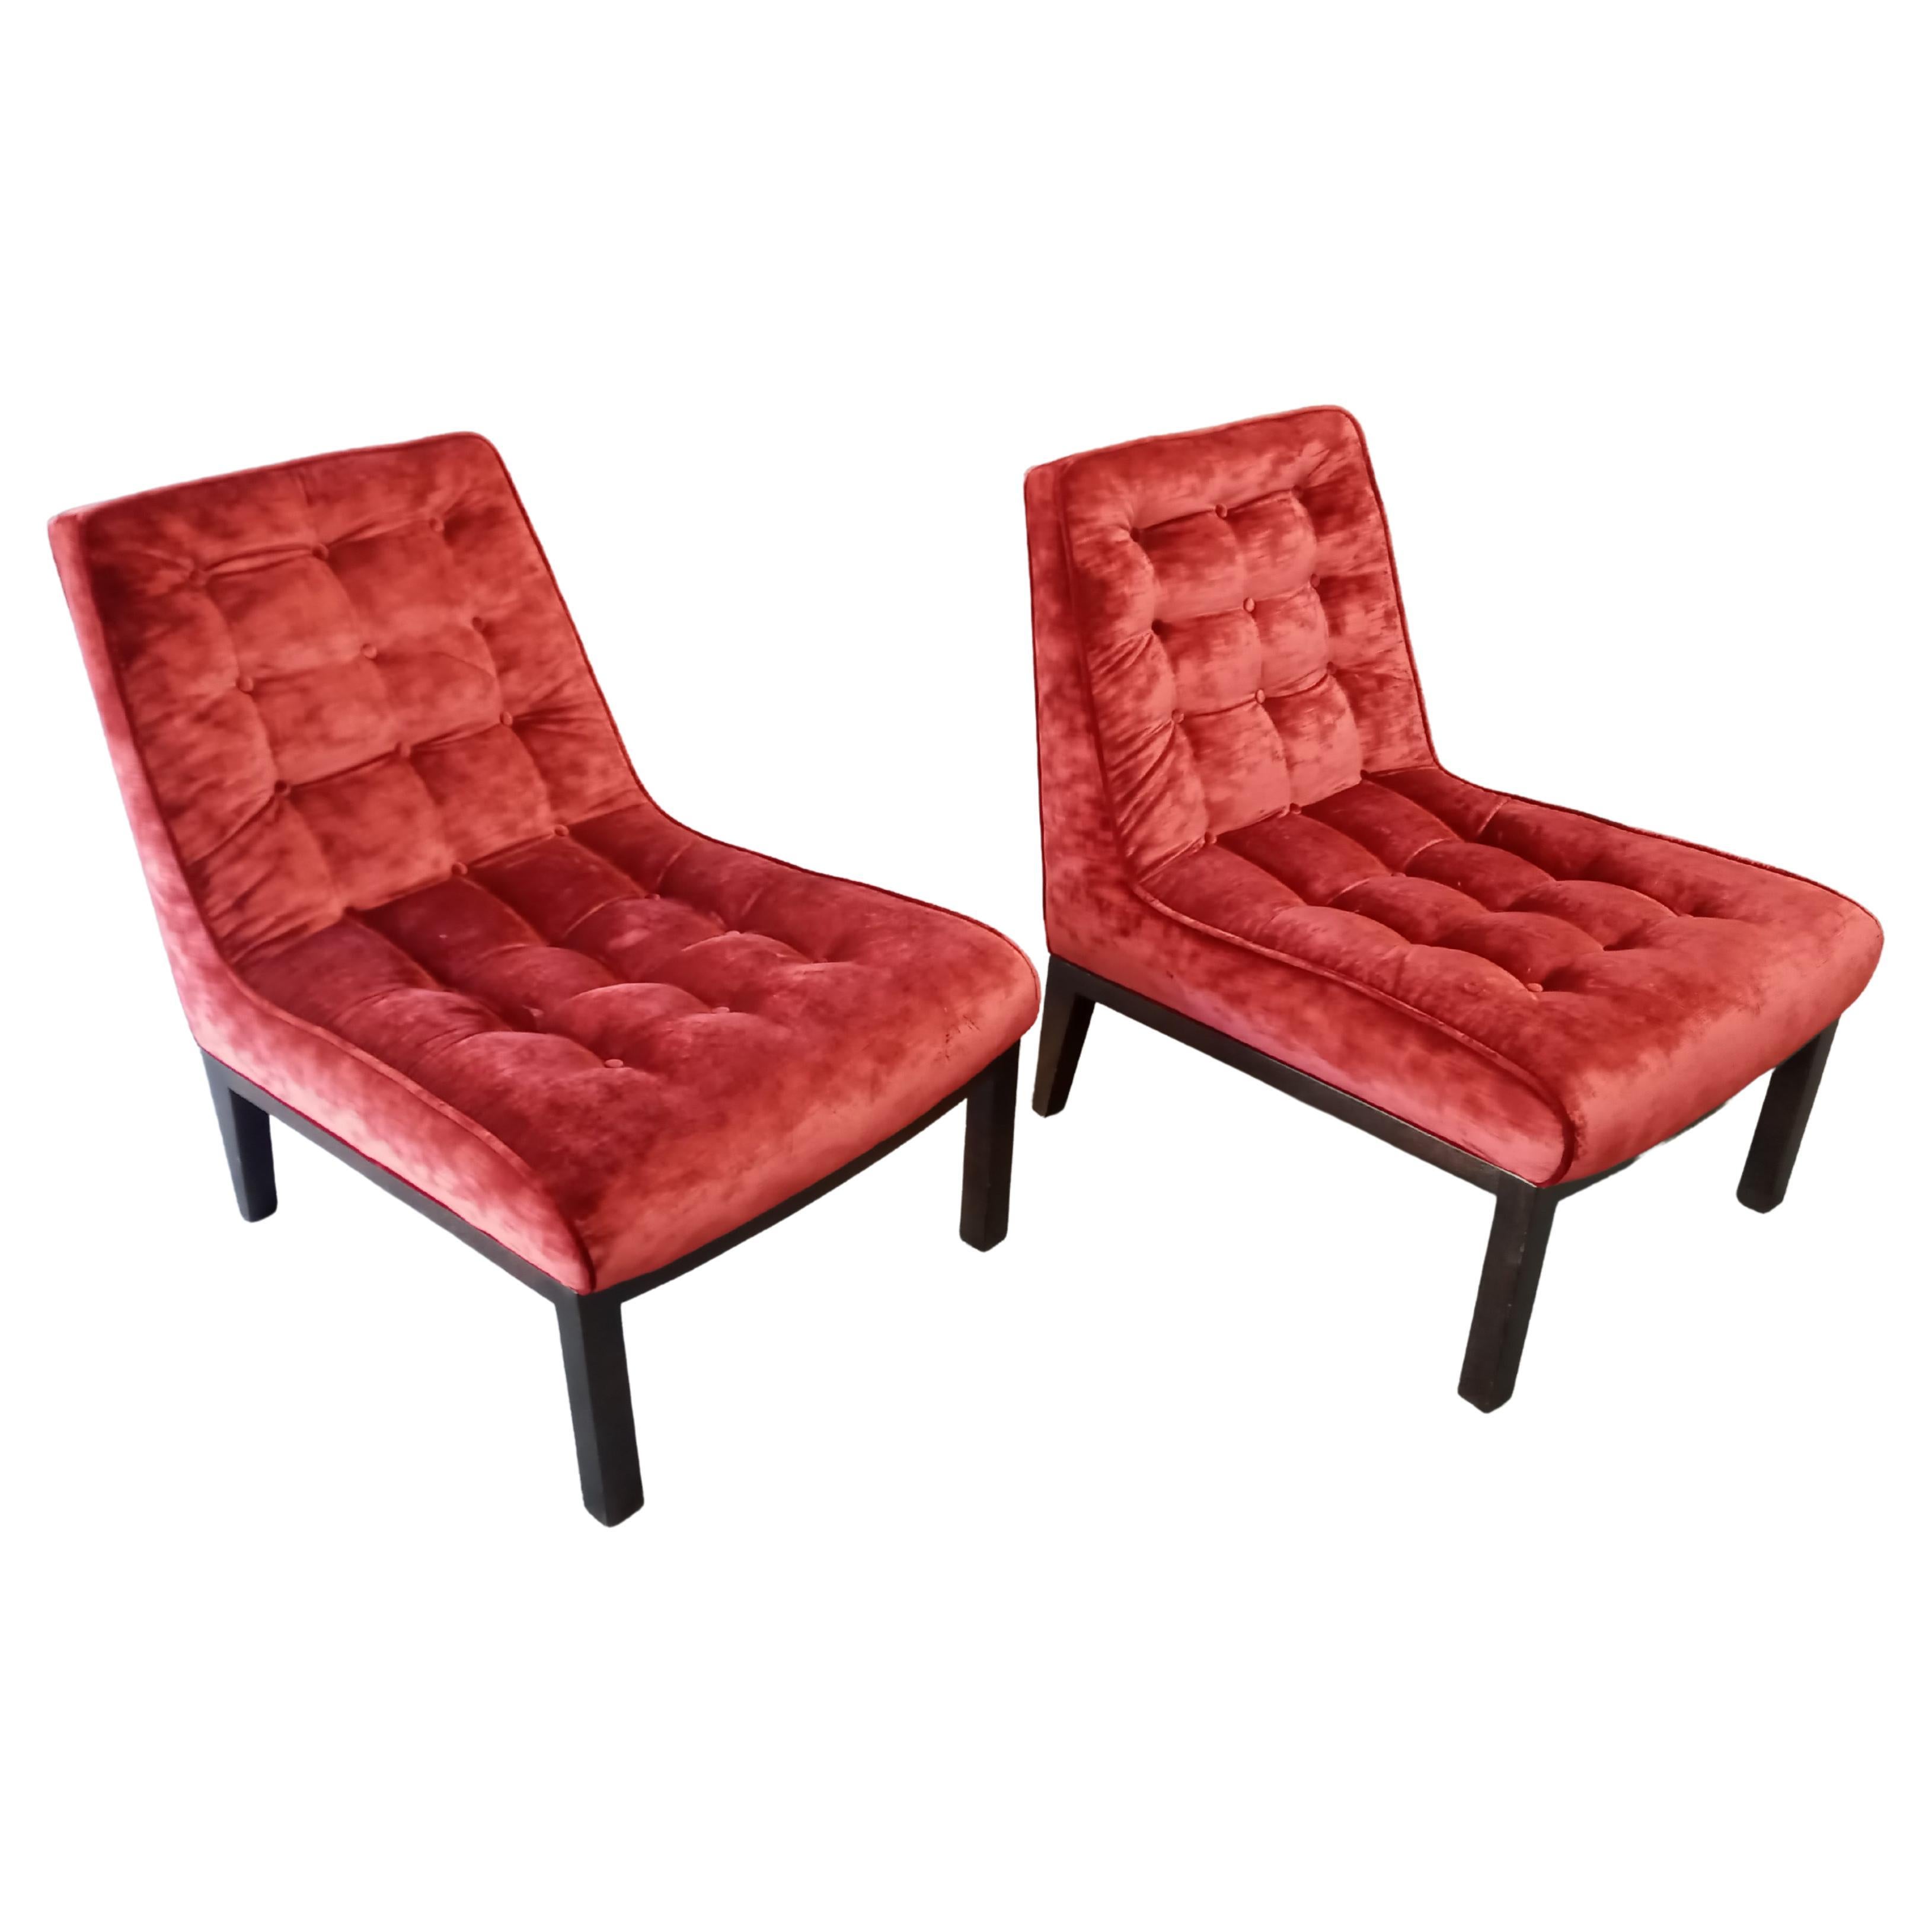 Edward Wormley für Dunbar Ein Paar elegante Slipper Lounge Chairs